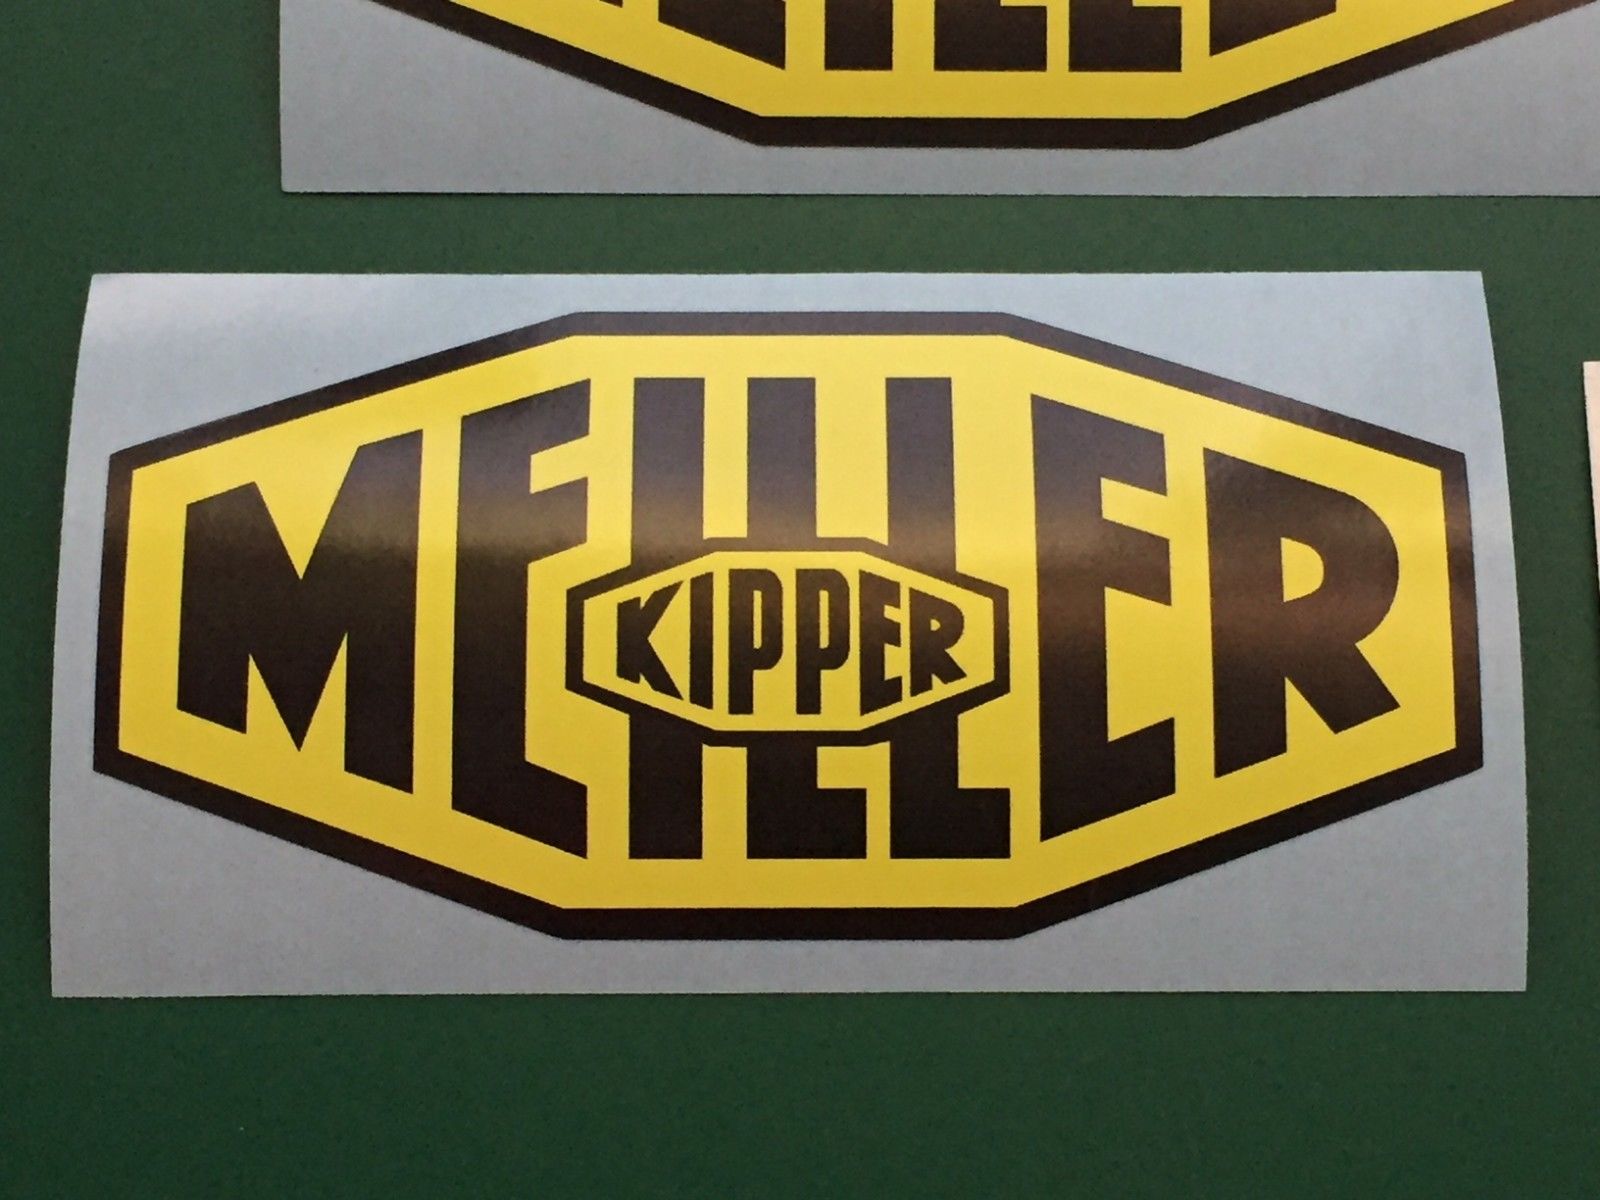 KIPPER MEILLER trailer skipper Carson neu Sticker  aufkleber   Autocalant 